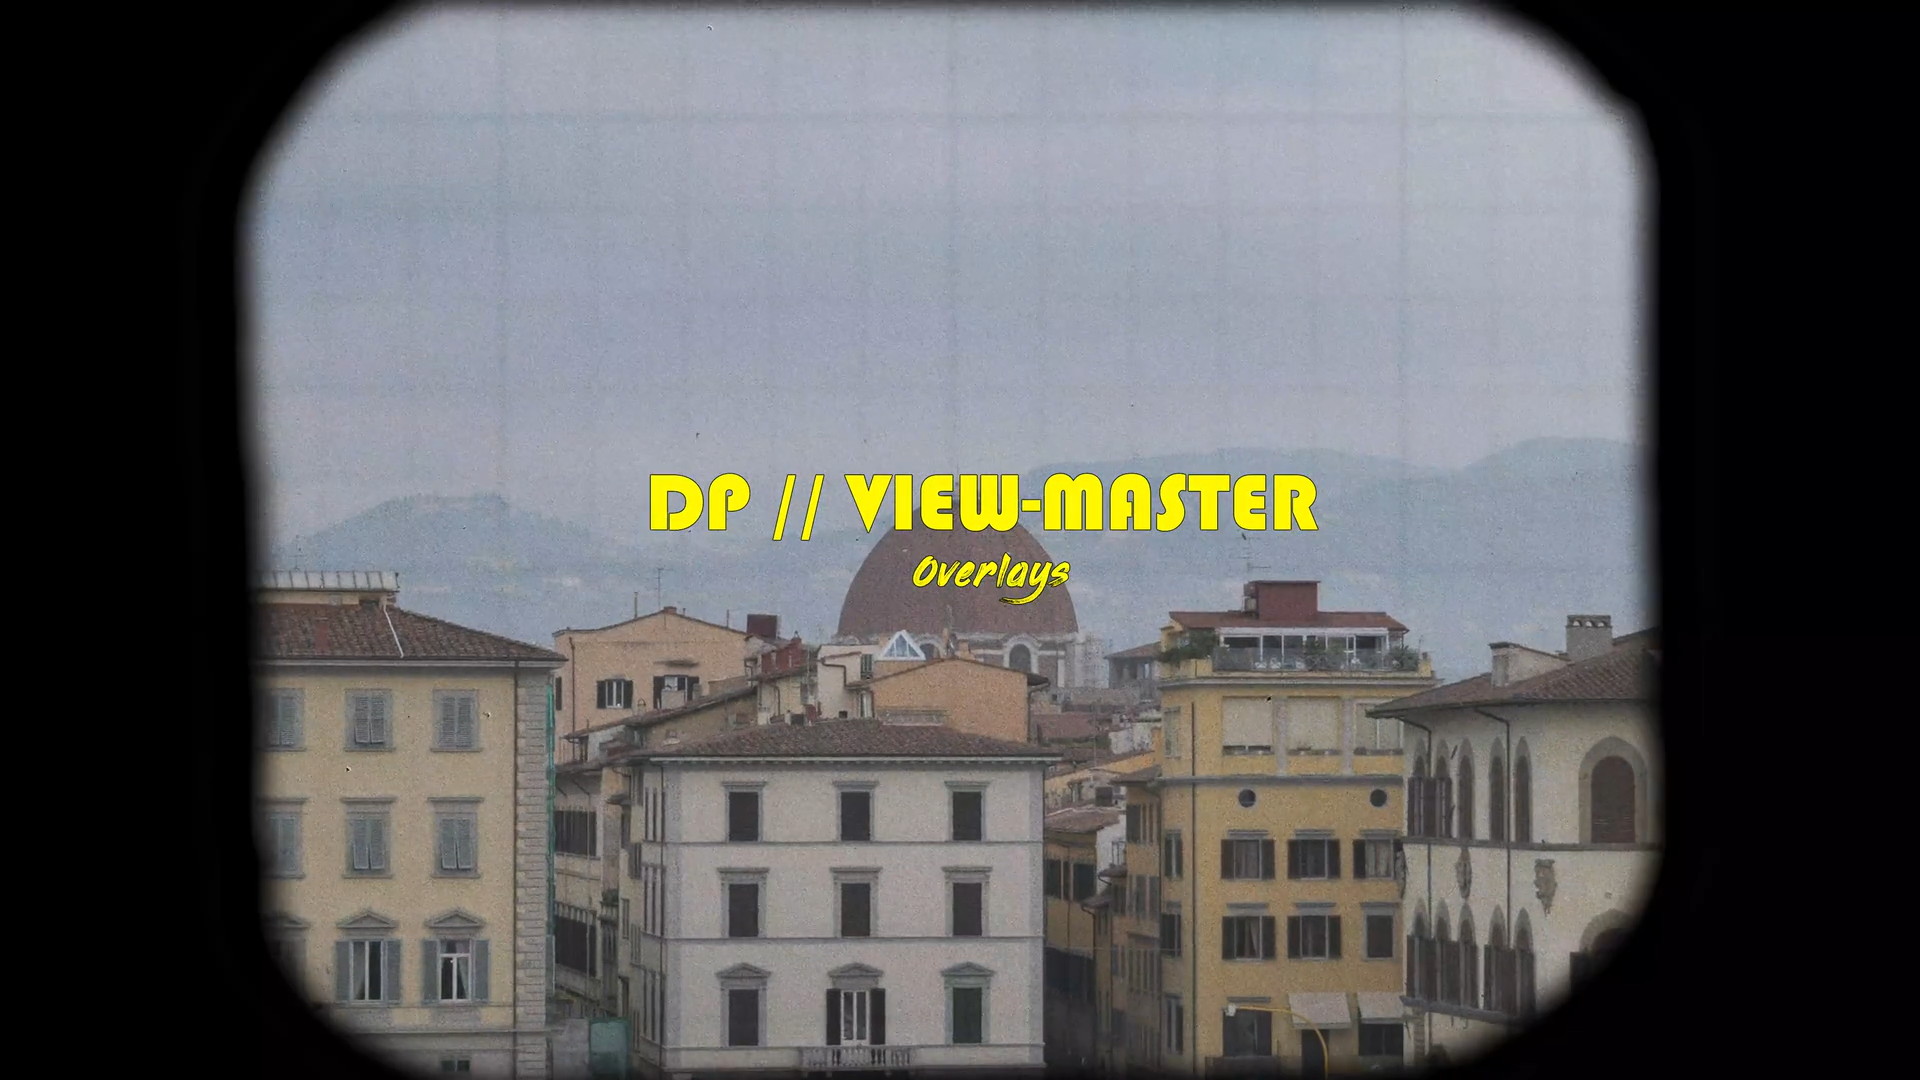 复古怀旧颗粒感闪烁4K边框叠加转场过渡光效视频素材+音效素材 DP_View-Master 影视音频 第1张